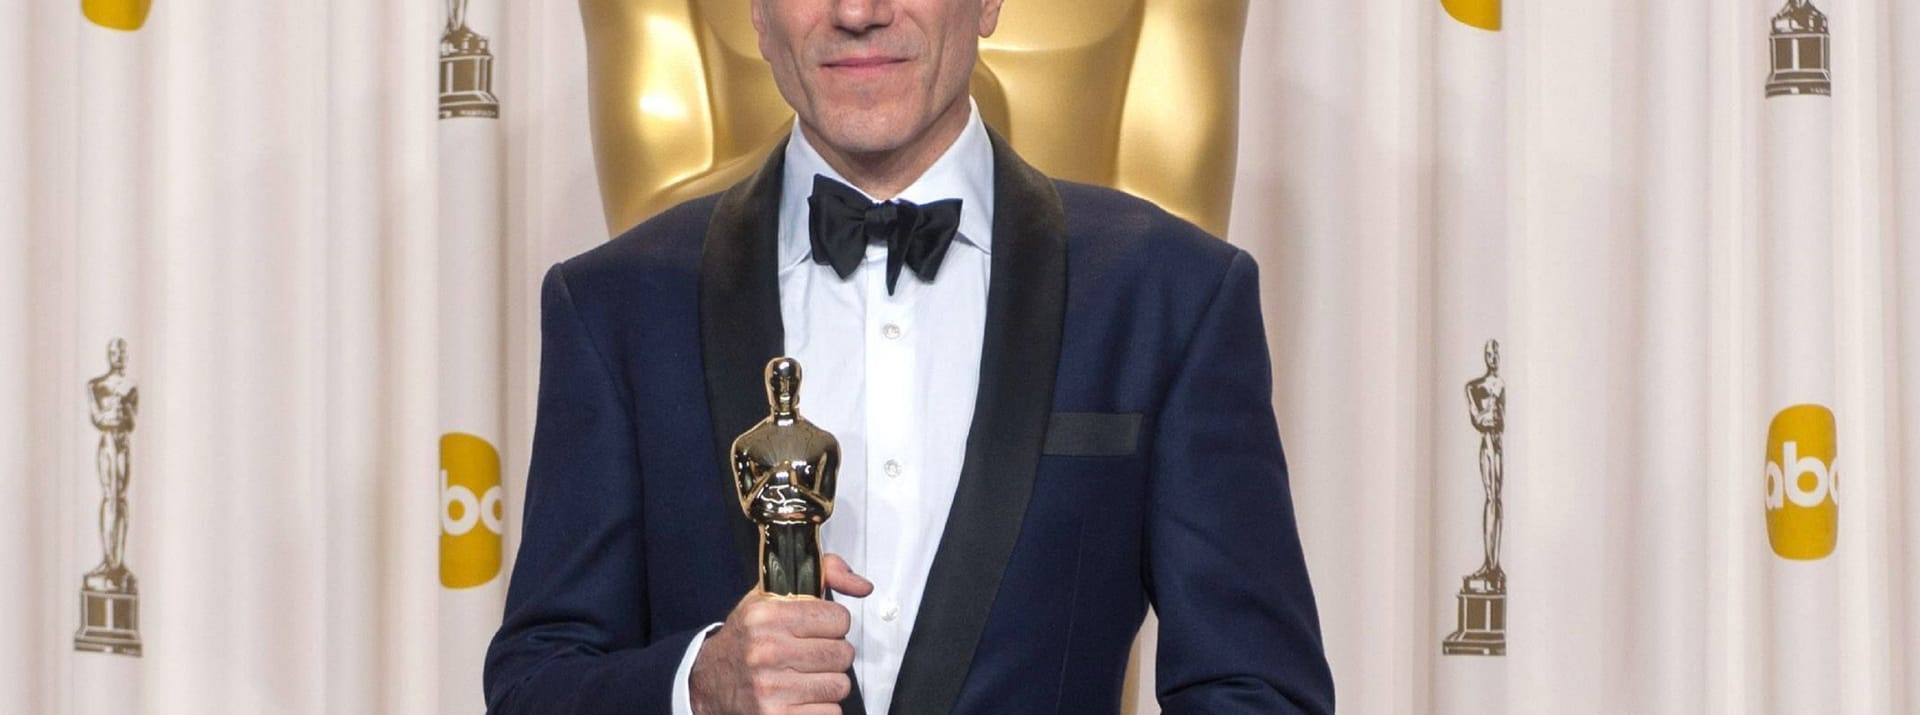 Daniel Day-Lewis: 2013 lief Jack Nicholson der britische Mime den Rang ab. Er hat zwar ebenfalls drei Oscars zu Hause stehen, jedoch alle in der Kategorie "Bester Hauptdarsteller": "Mein linker Fuß" (1990), "There will Be Blood" (2008) und "Lincoln" (2013).